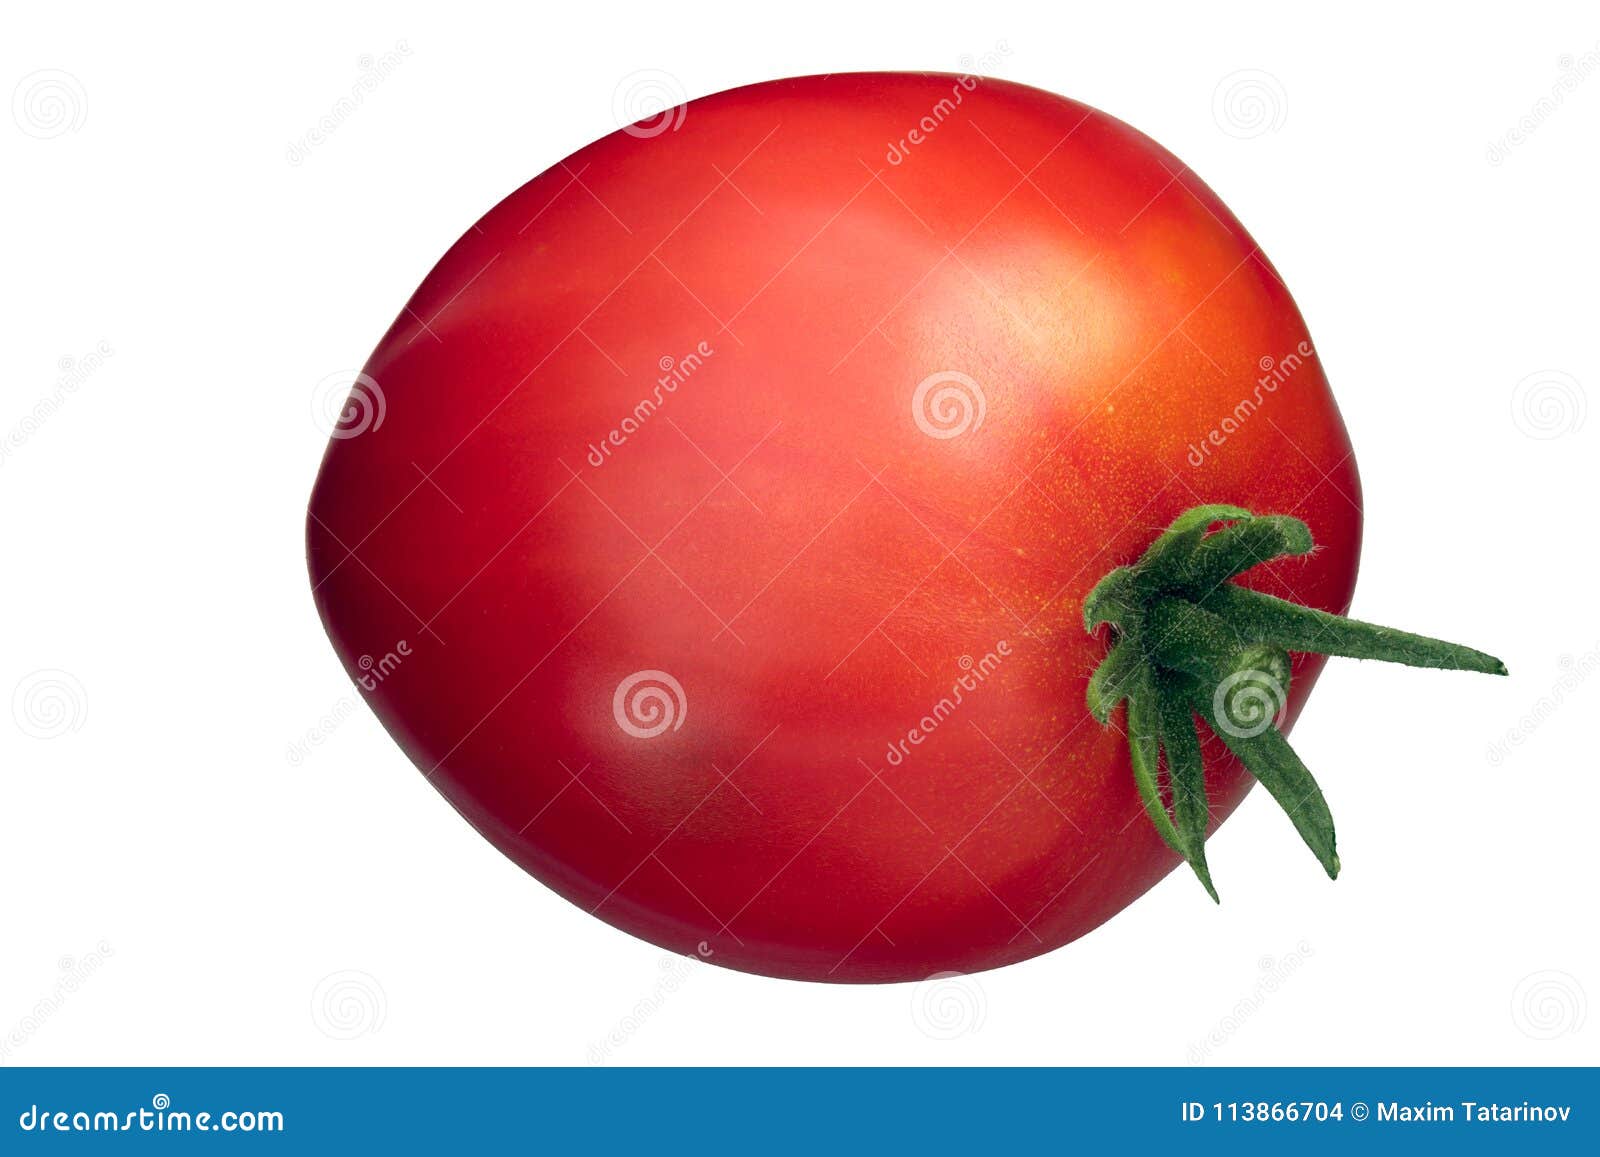 cuore di bue oxheart tomato, paths